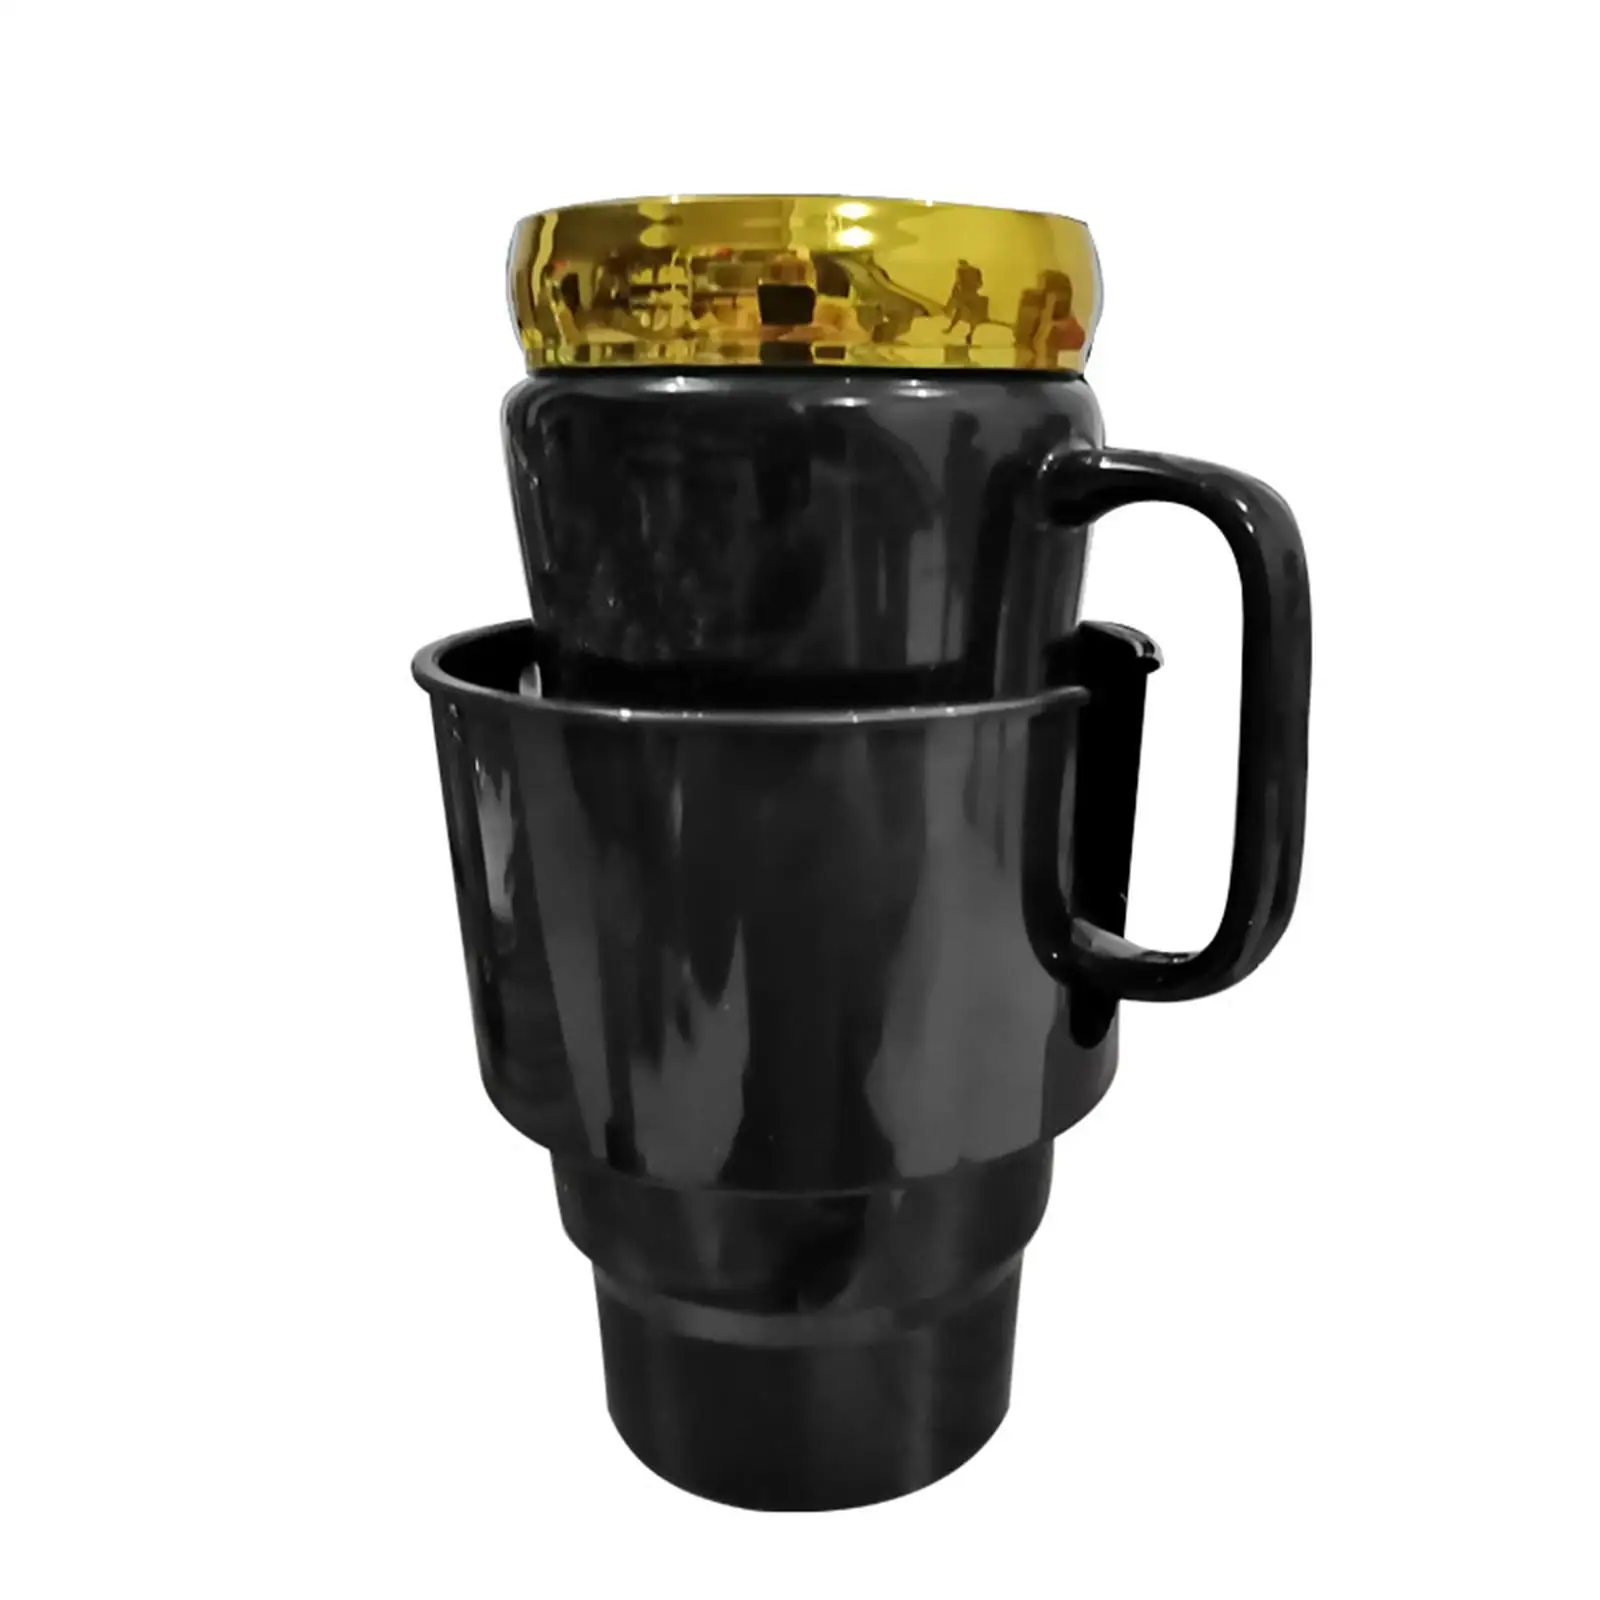 Car Water Cup Holder u shape Slot Design Car Cup Holder Insert for Mugs Beverages